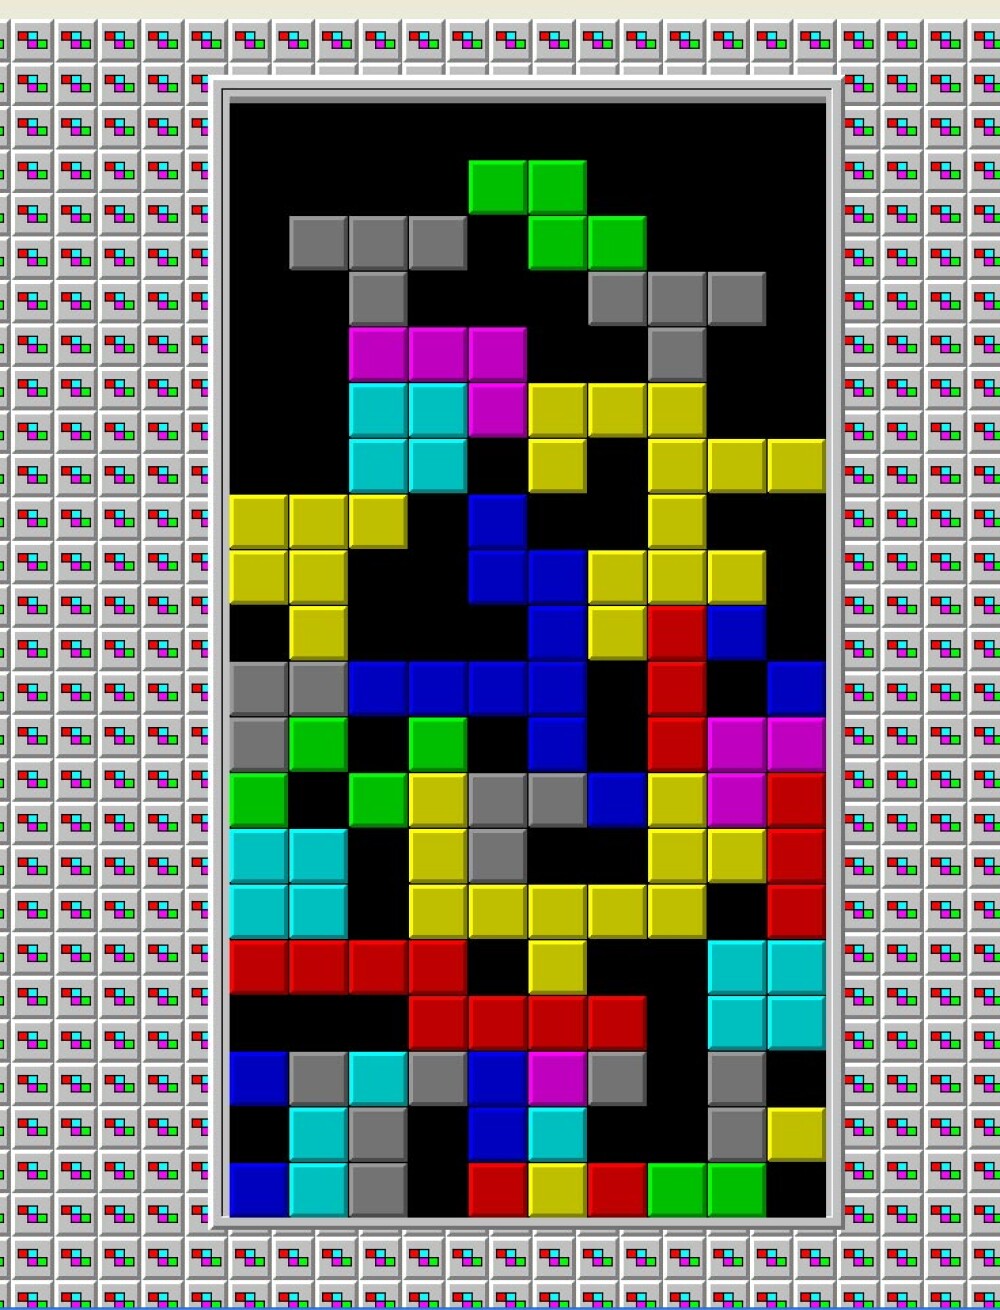 Jocul Tetris a implinit 25 de ani! - Imaginea 3